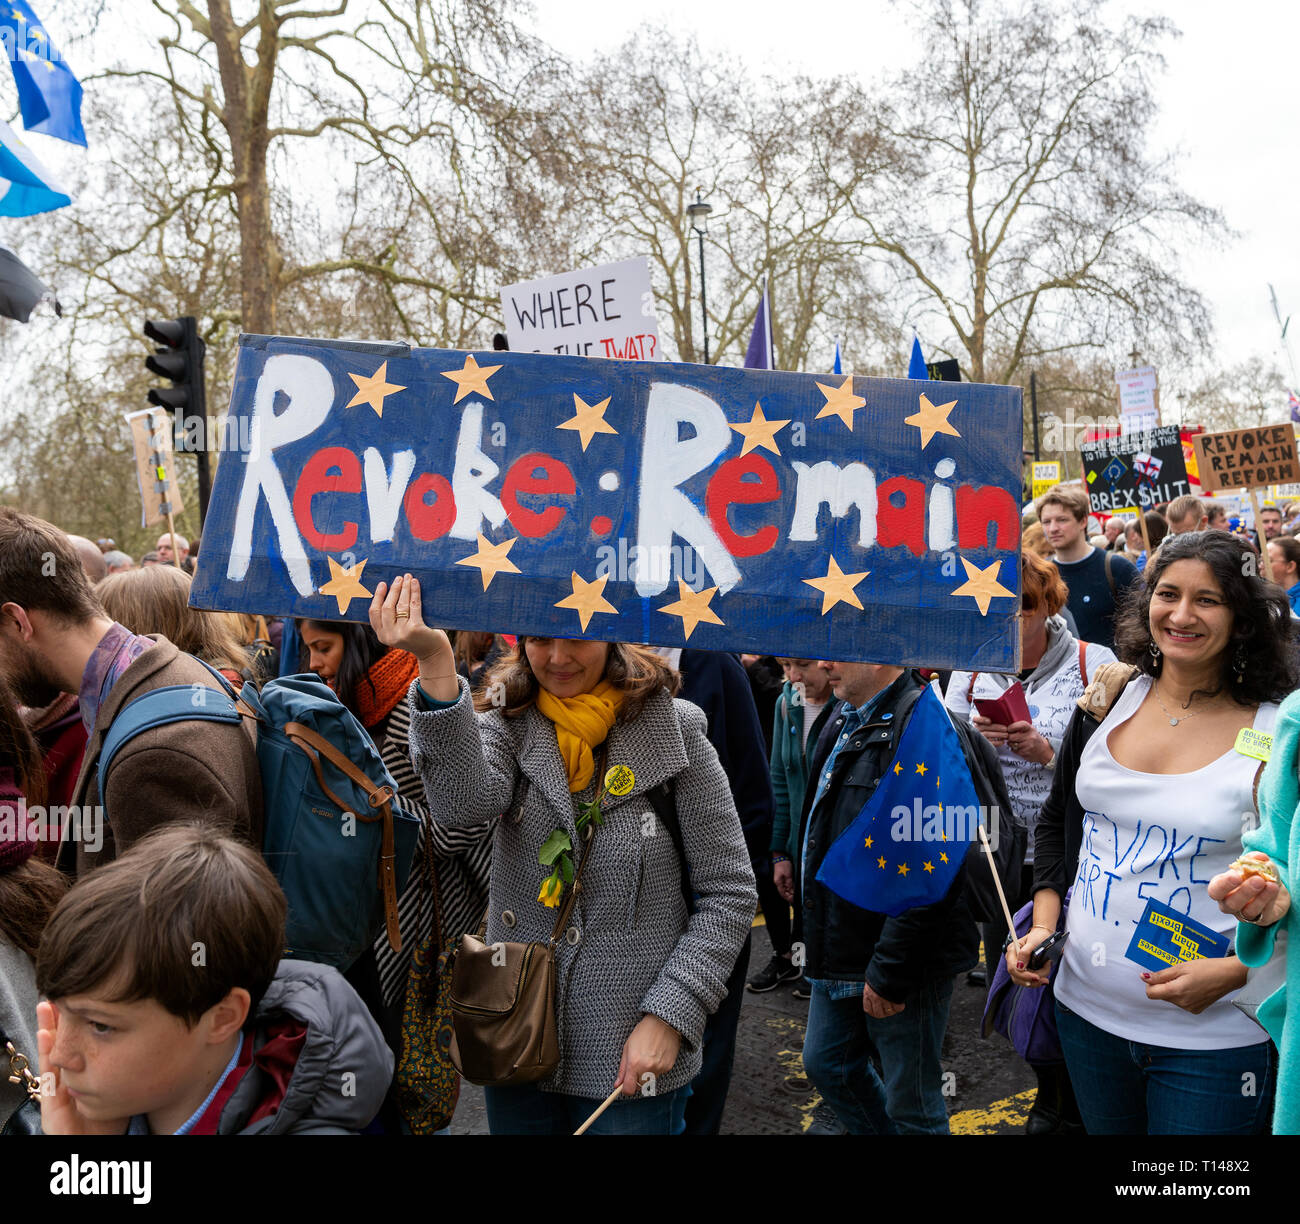 Londres, Royaume-Uni. 23 mars 2019. Des milliers de personnes viennent à une manifestation appelant à un deuxième référendum sur la sortie de la Grande-Bretagne de l'Union européenne, connue sous le nom de Brexit. Banque D'Images